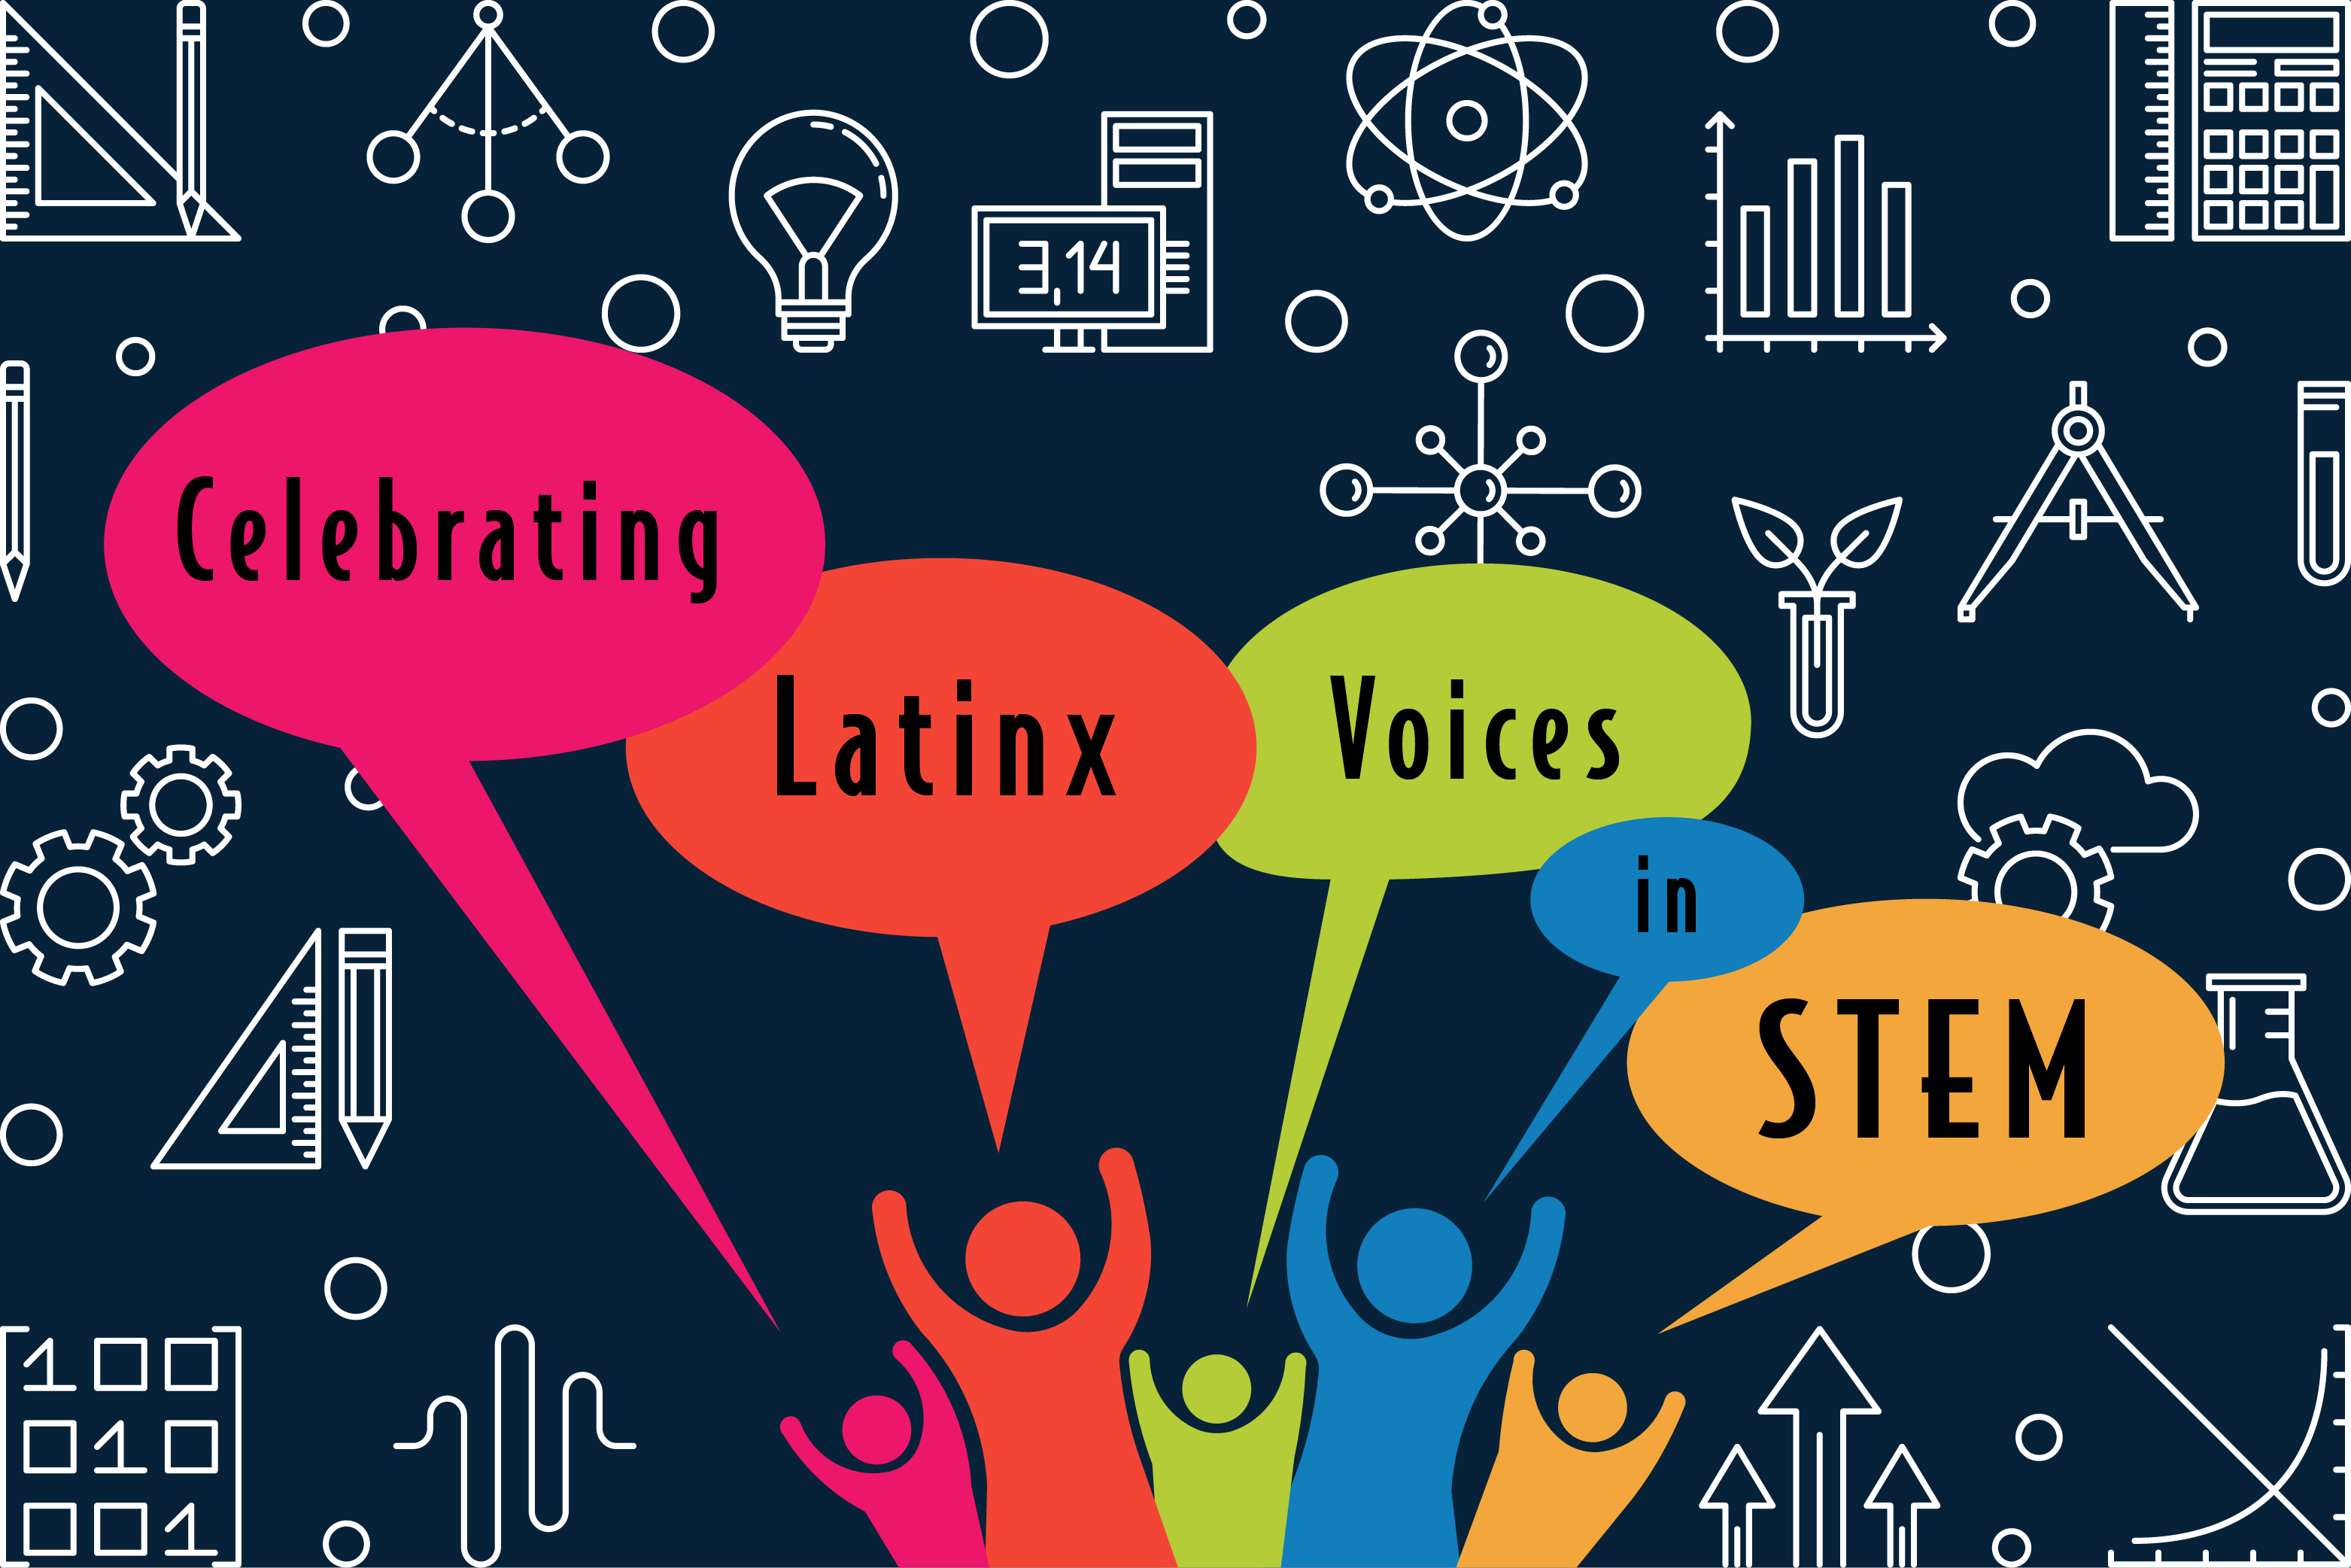 Celebrating Latinx voices in STEM symposium